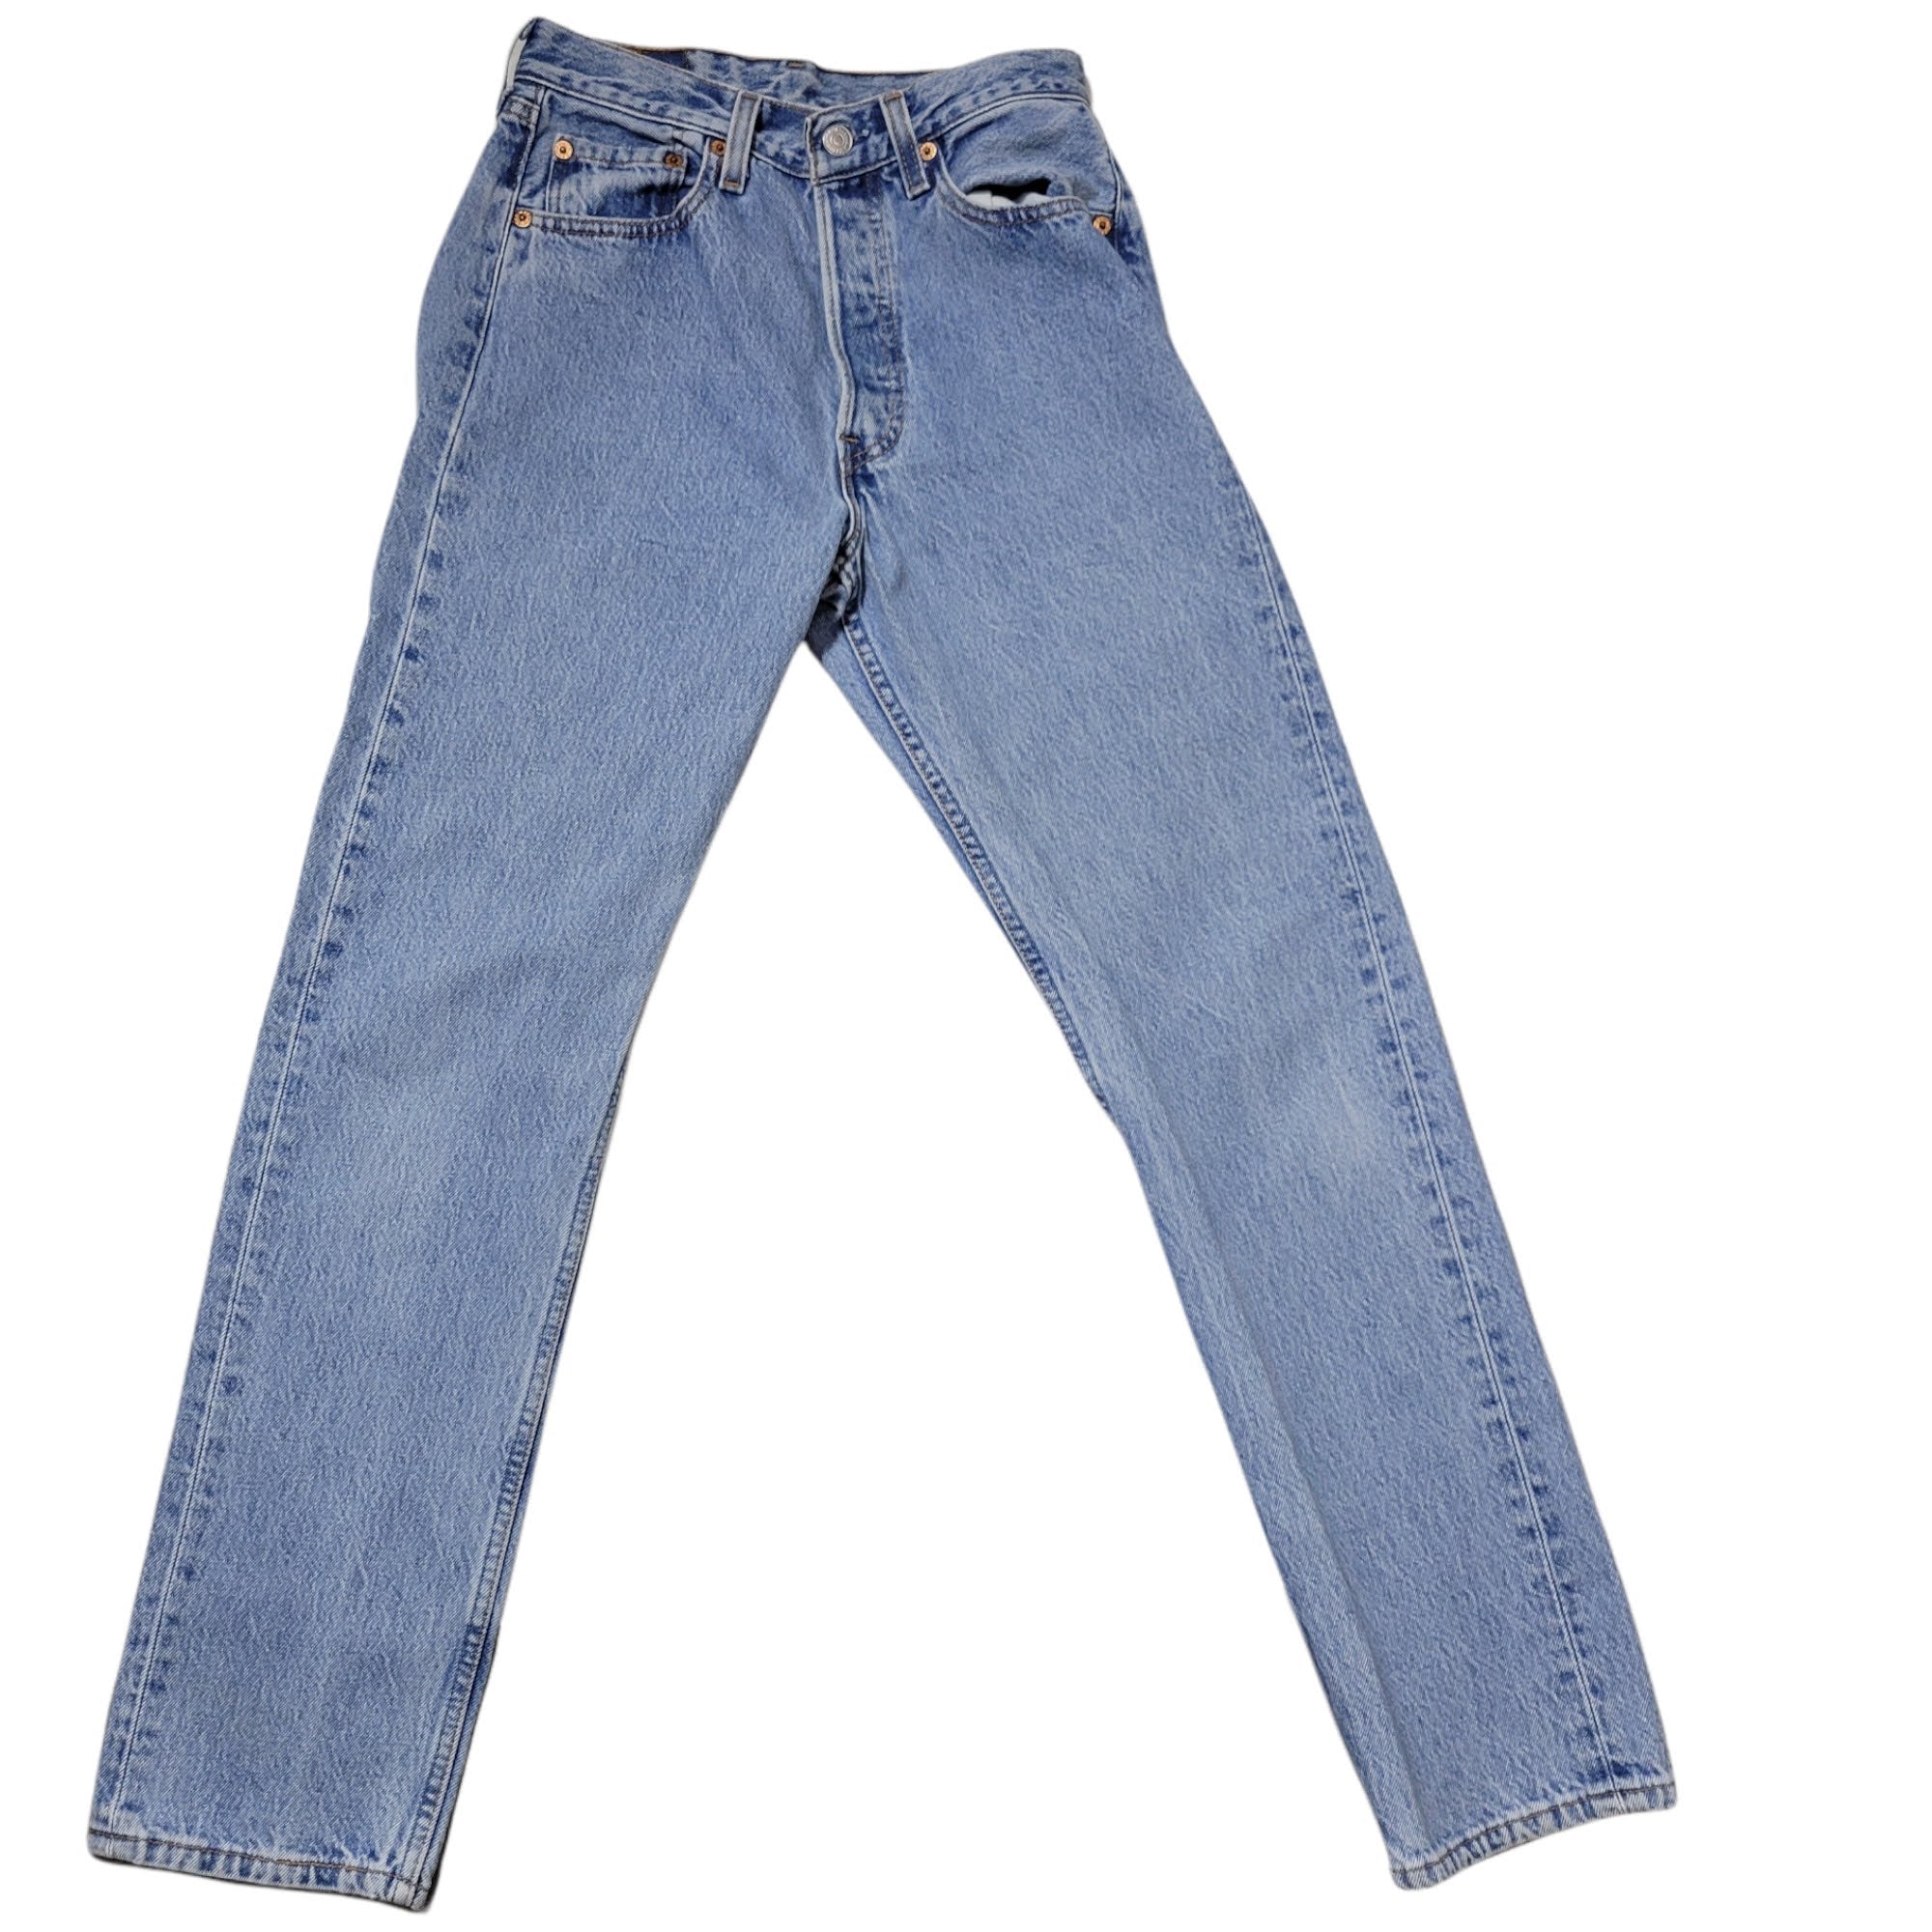 Vintage 501 Levis Jeans Size 25